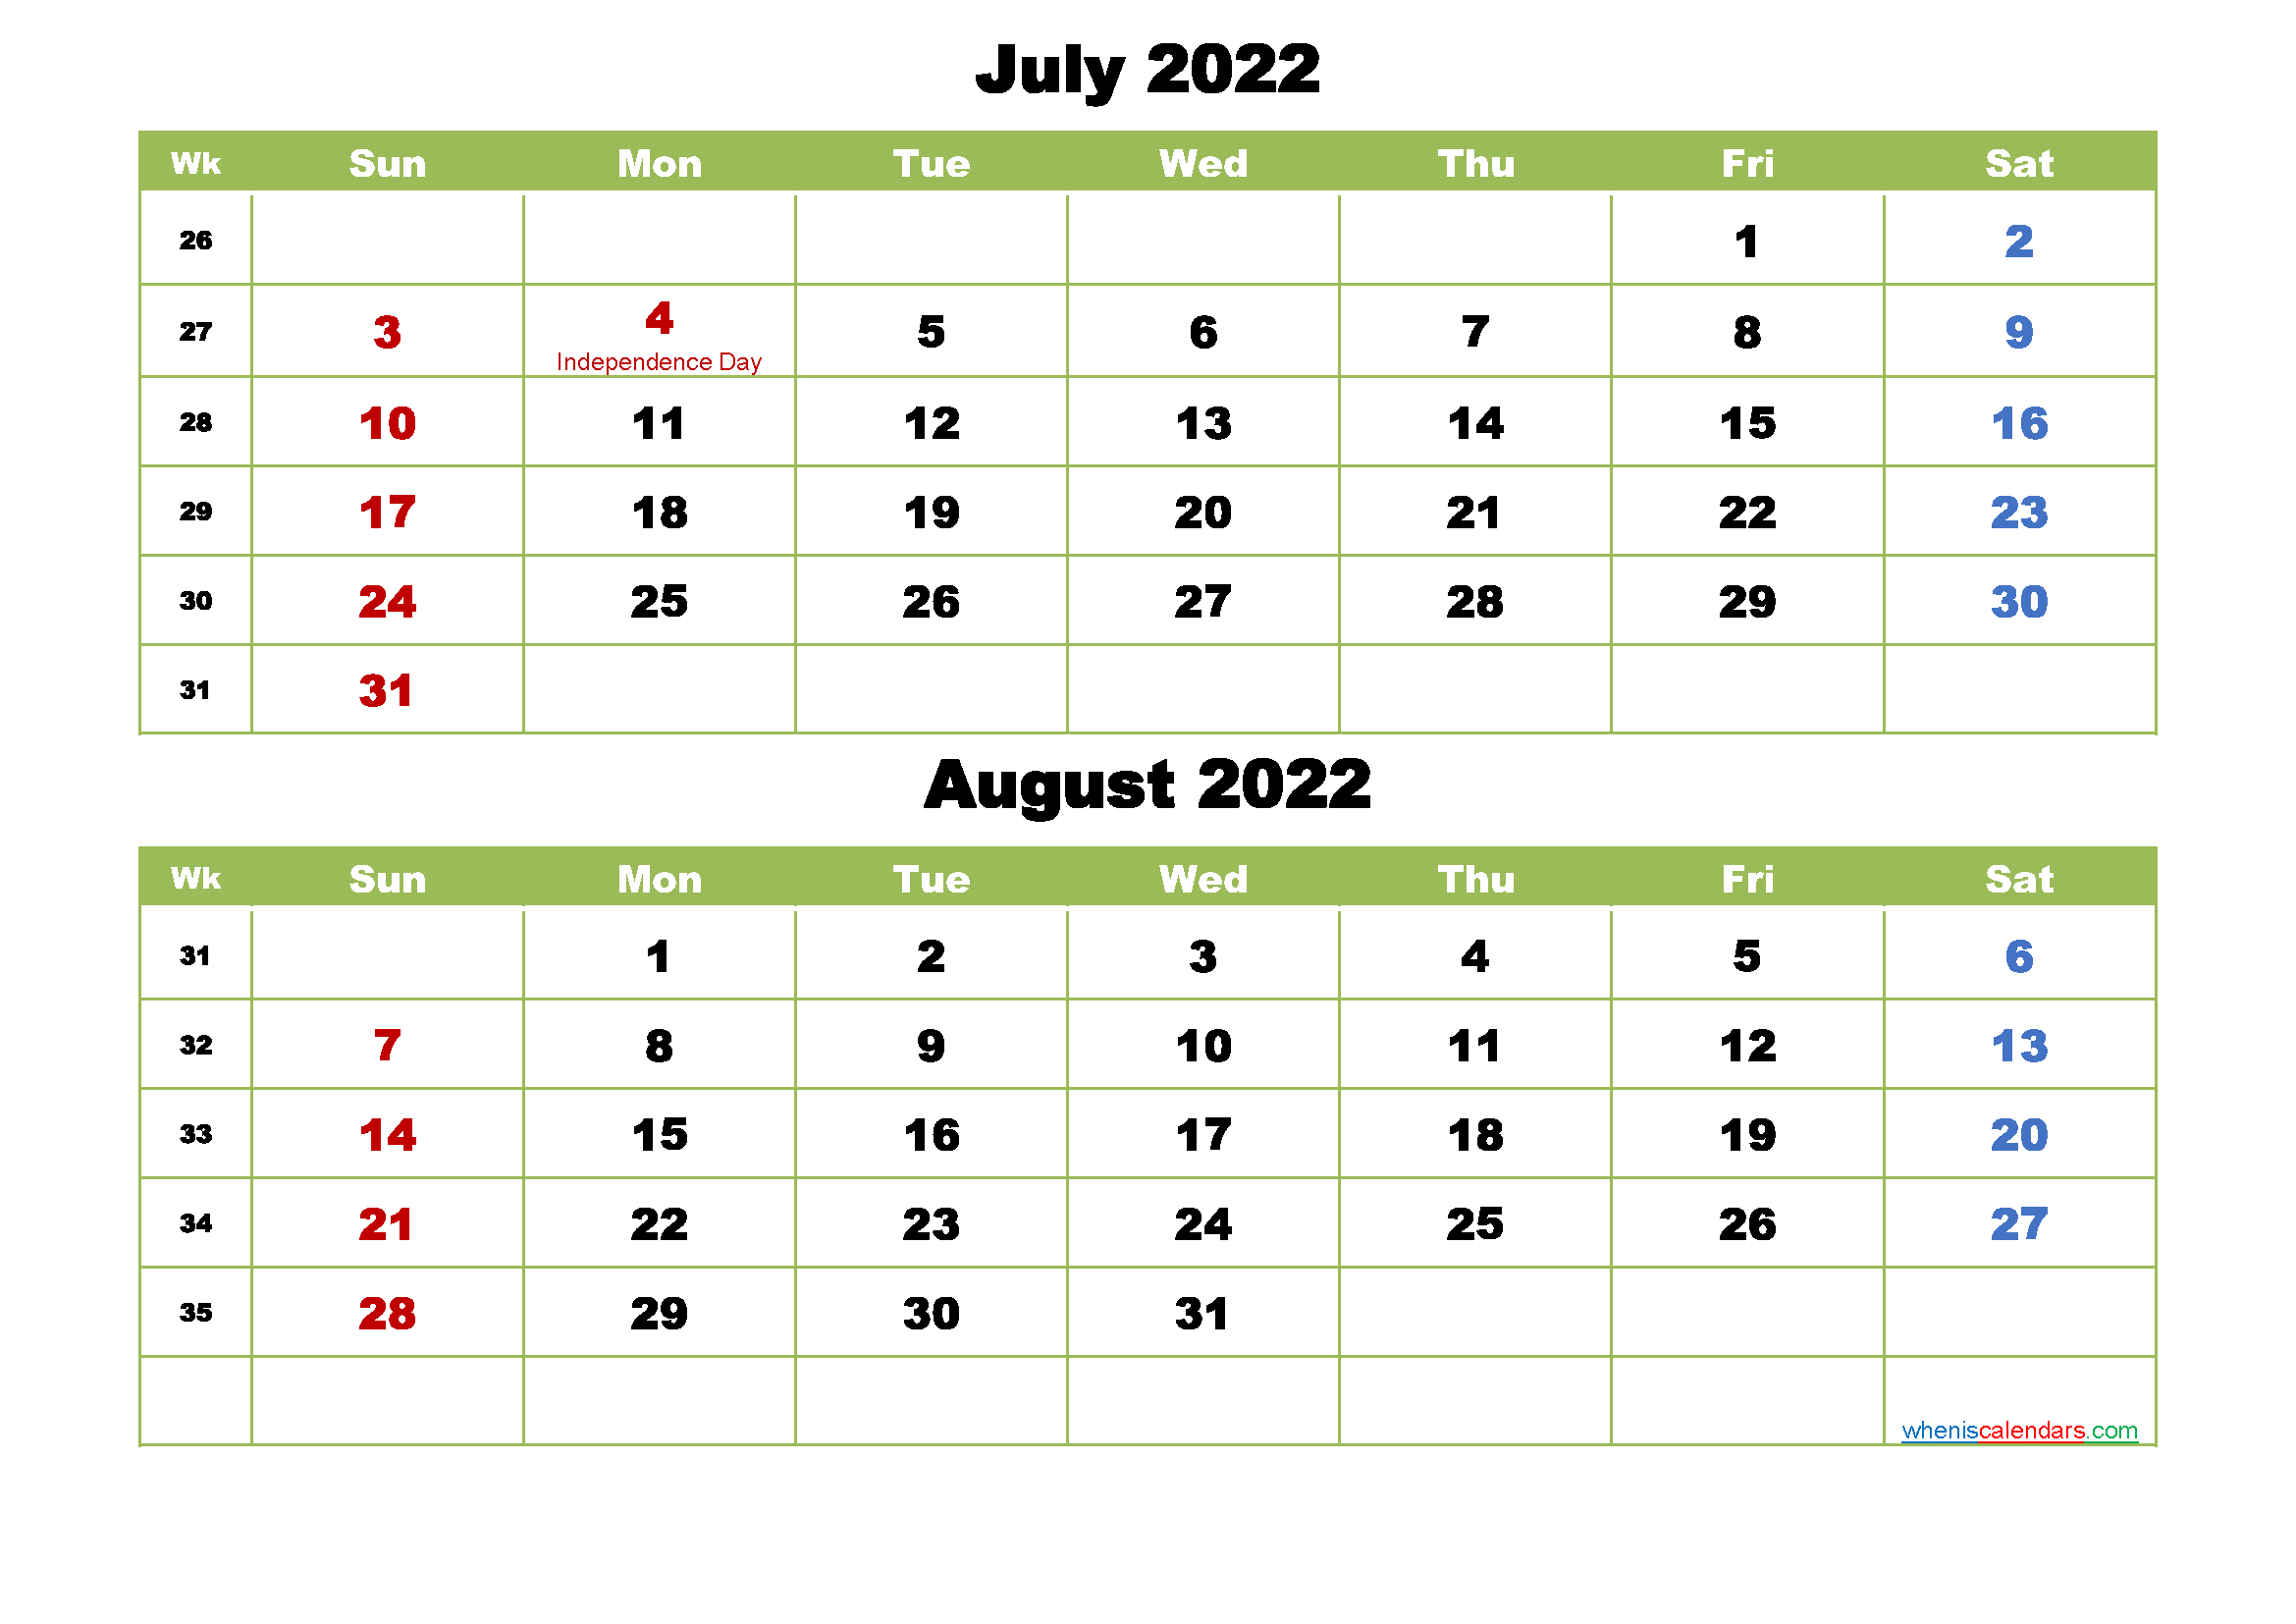 Get August 20 2022 Calendar